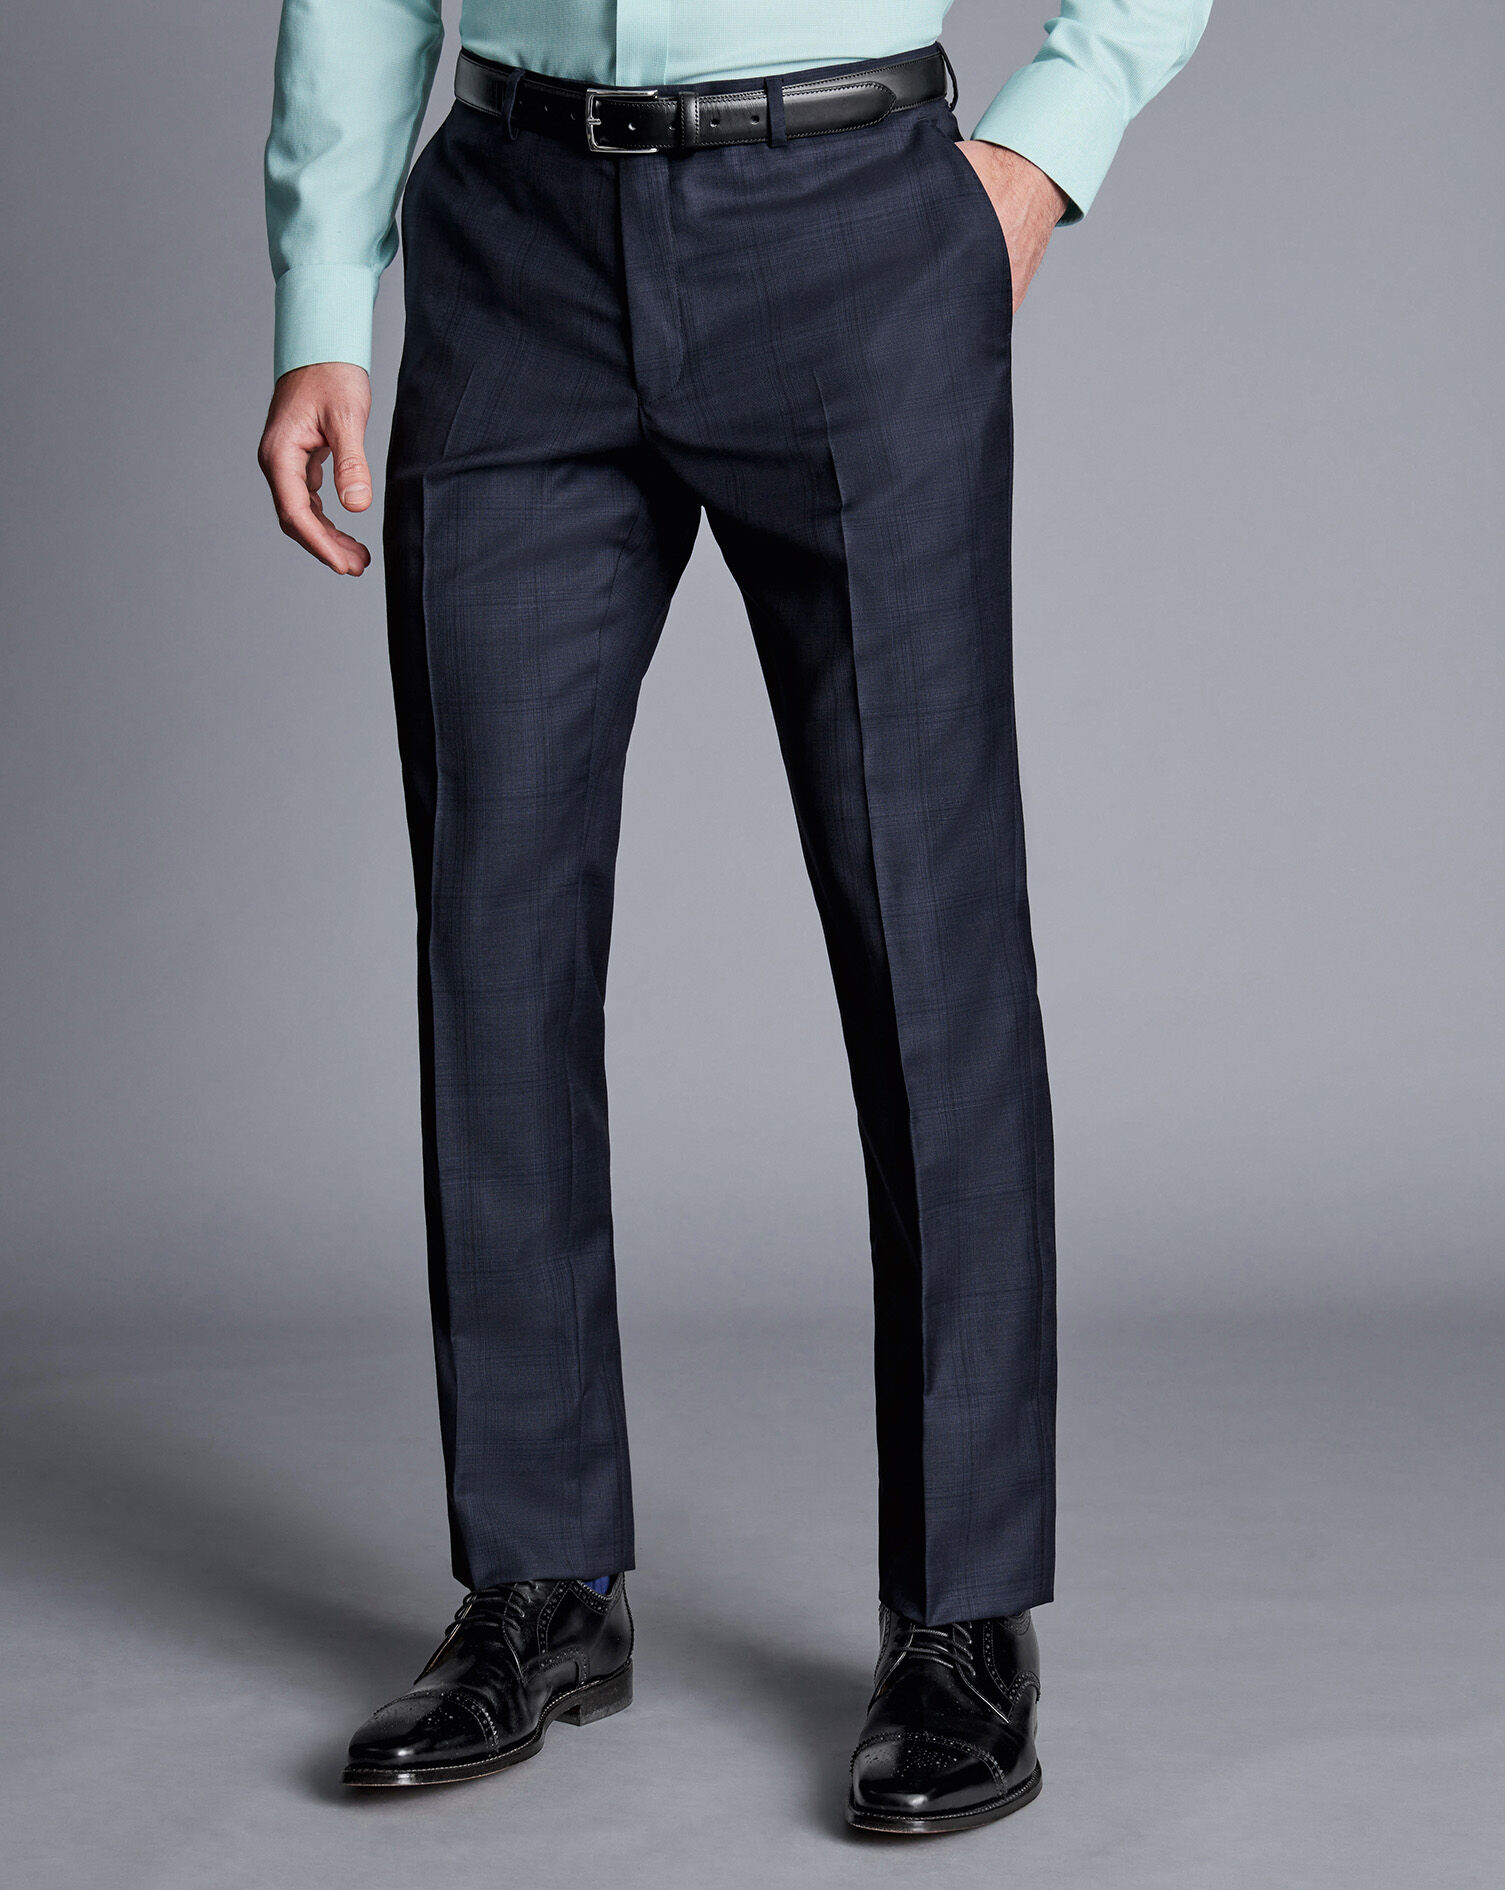 Grey Men's Dress Pants | Dillard's